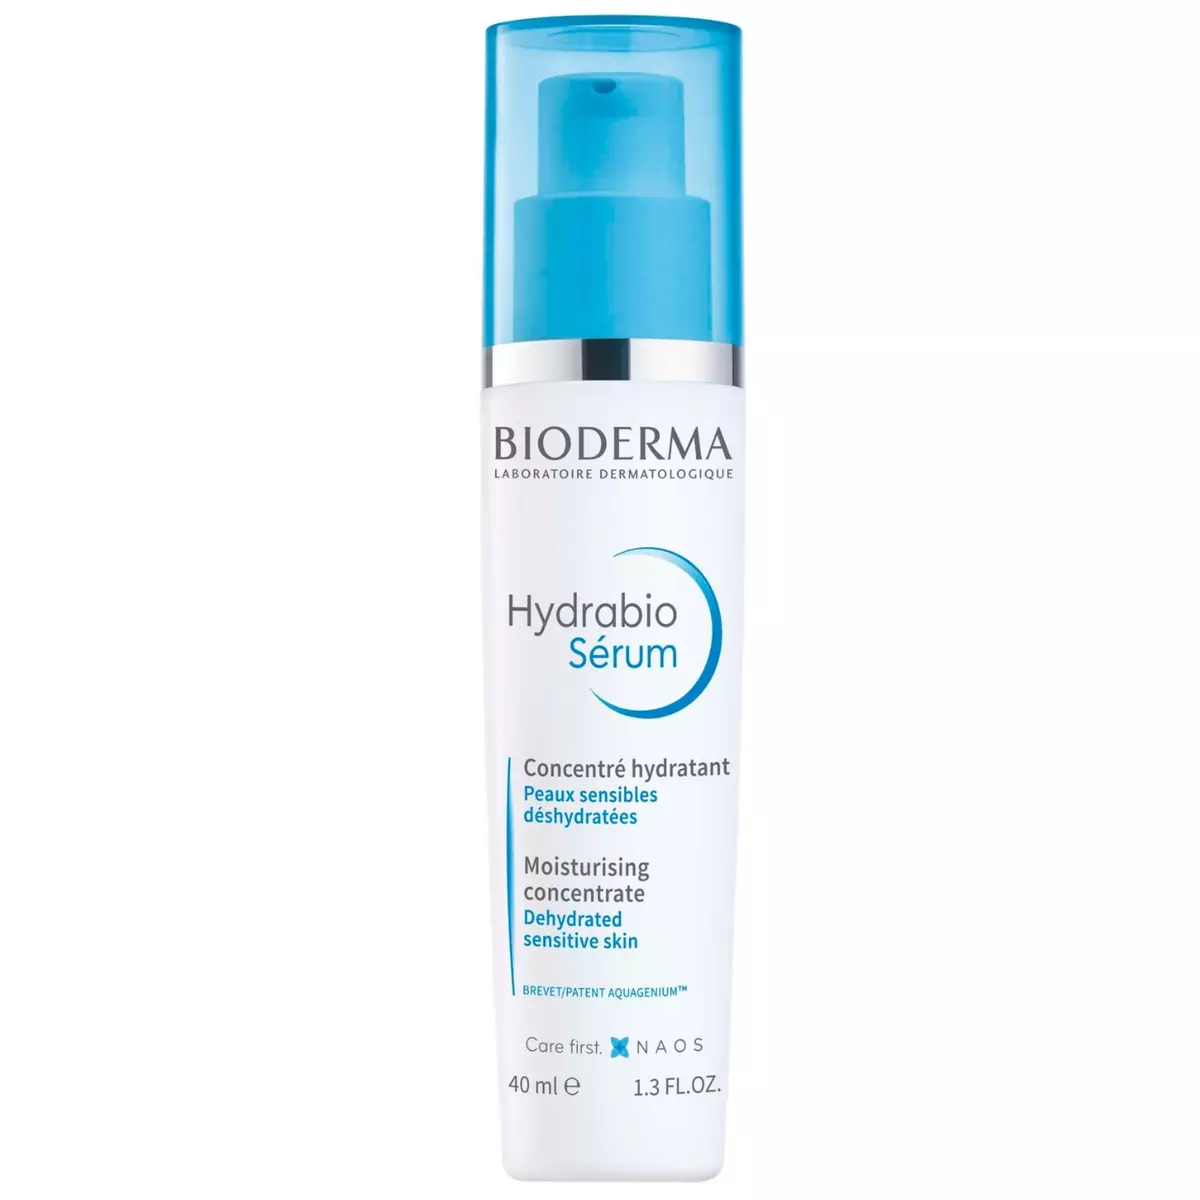 BIODERMA Hydrabio sérum concentré hydratant peaux sensibles déshydratées 40ml